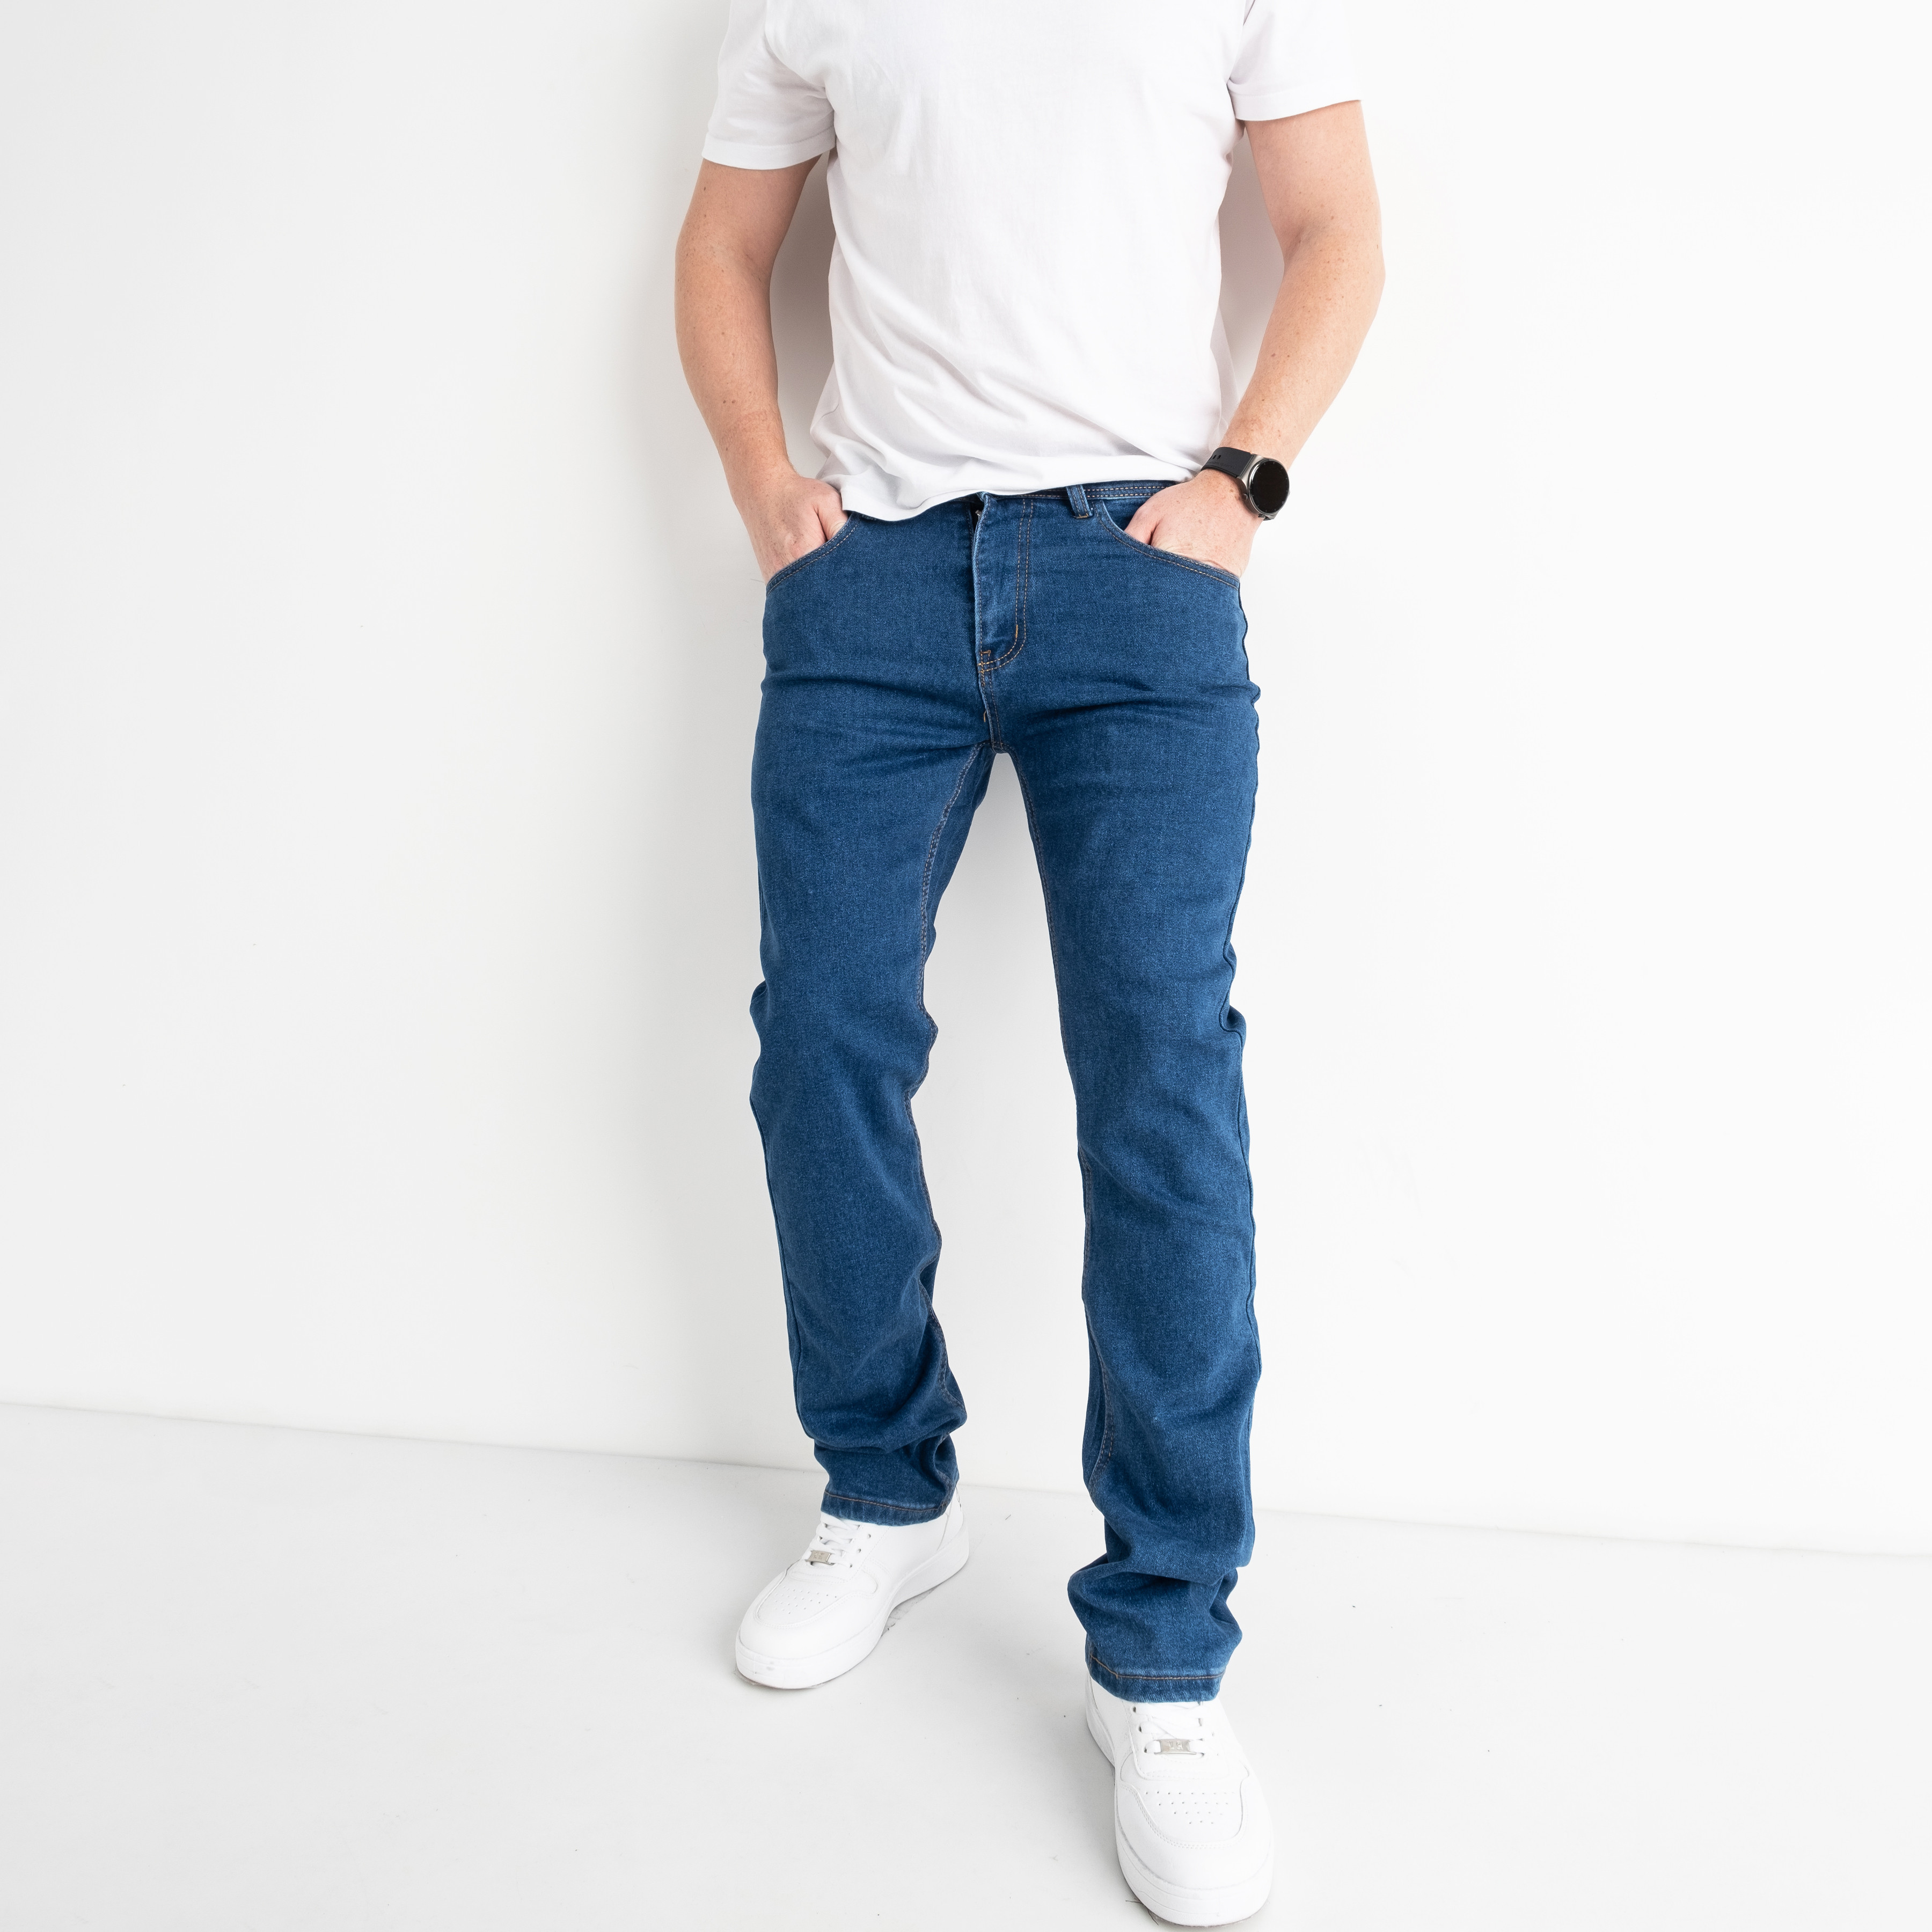 0712 SIHEREN джинсы мужские синие стрейчевые (8 ед.размеры: 29.30.32.33.34/2.36.38)